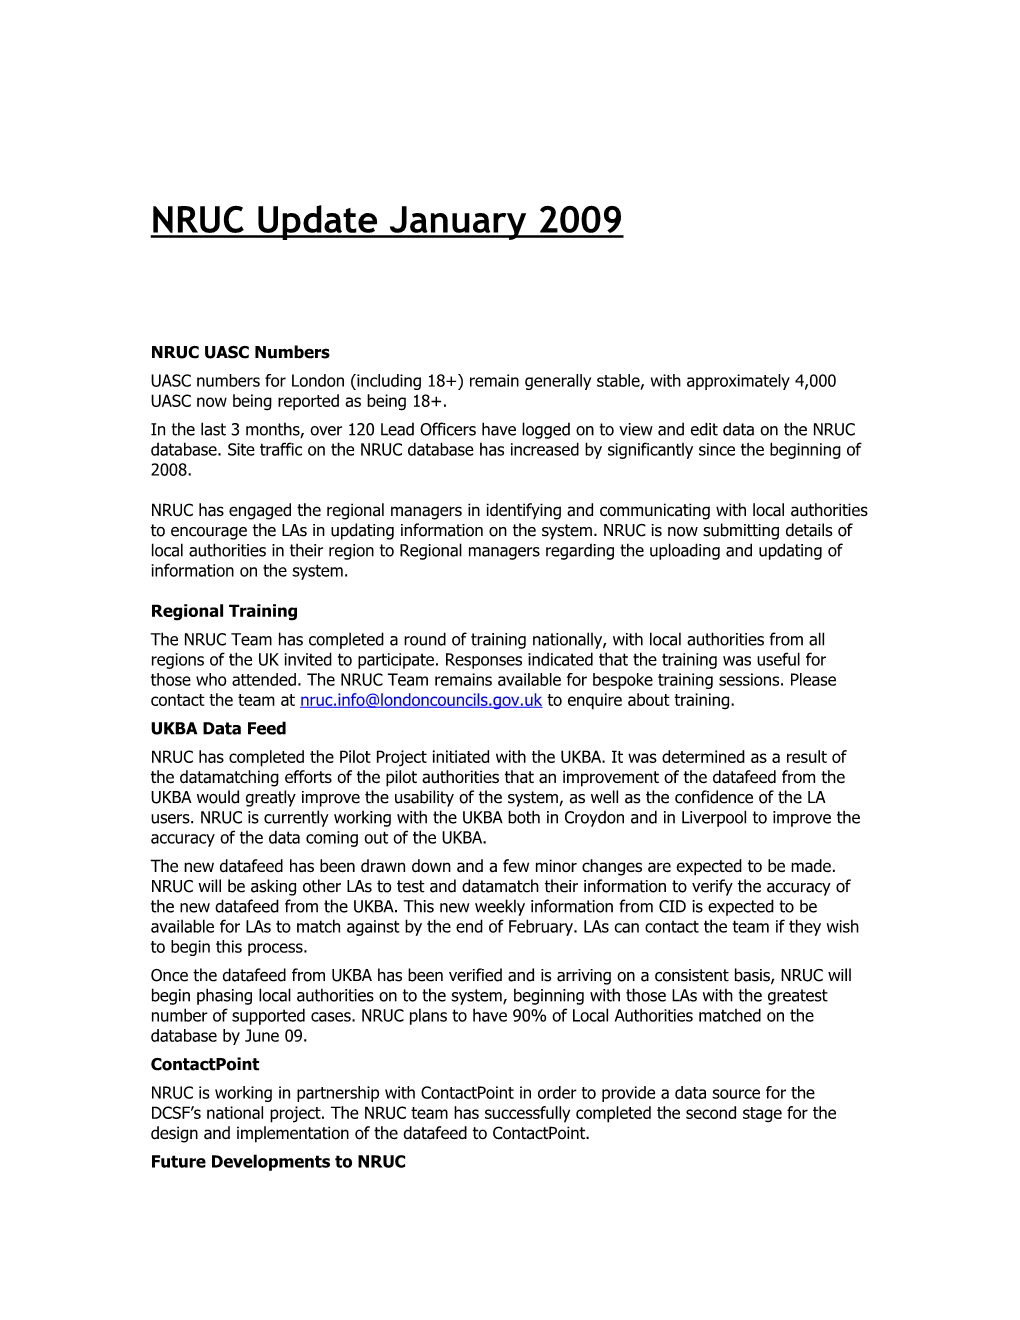 NRUC Update (ADCS)